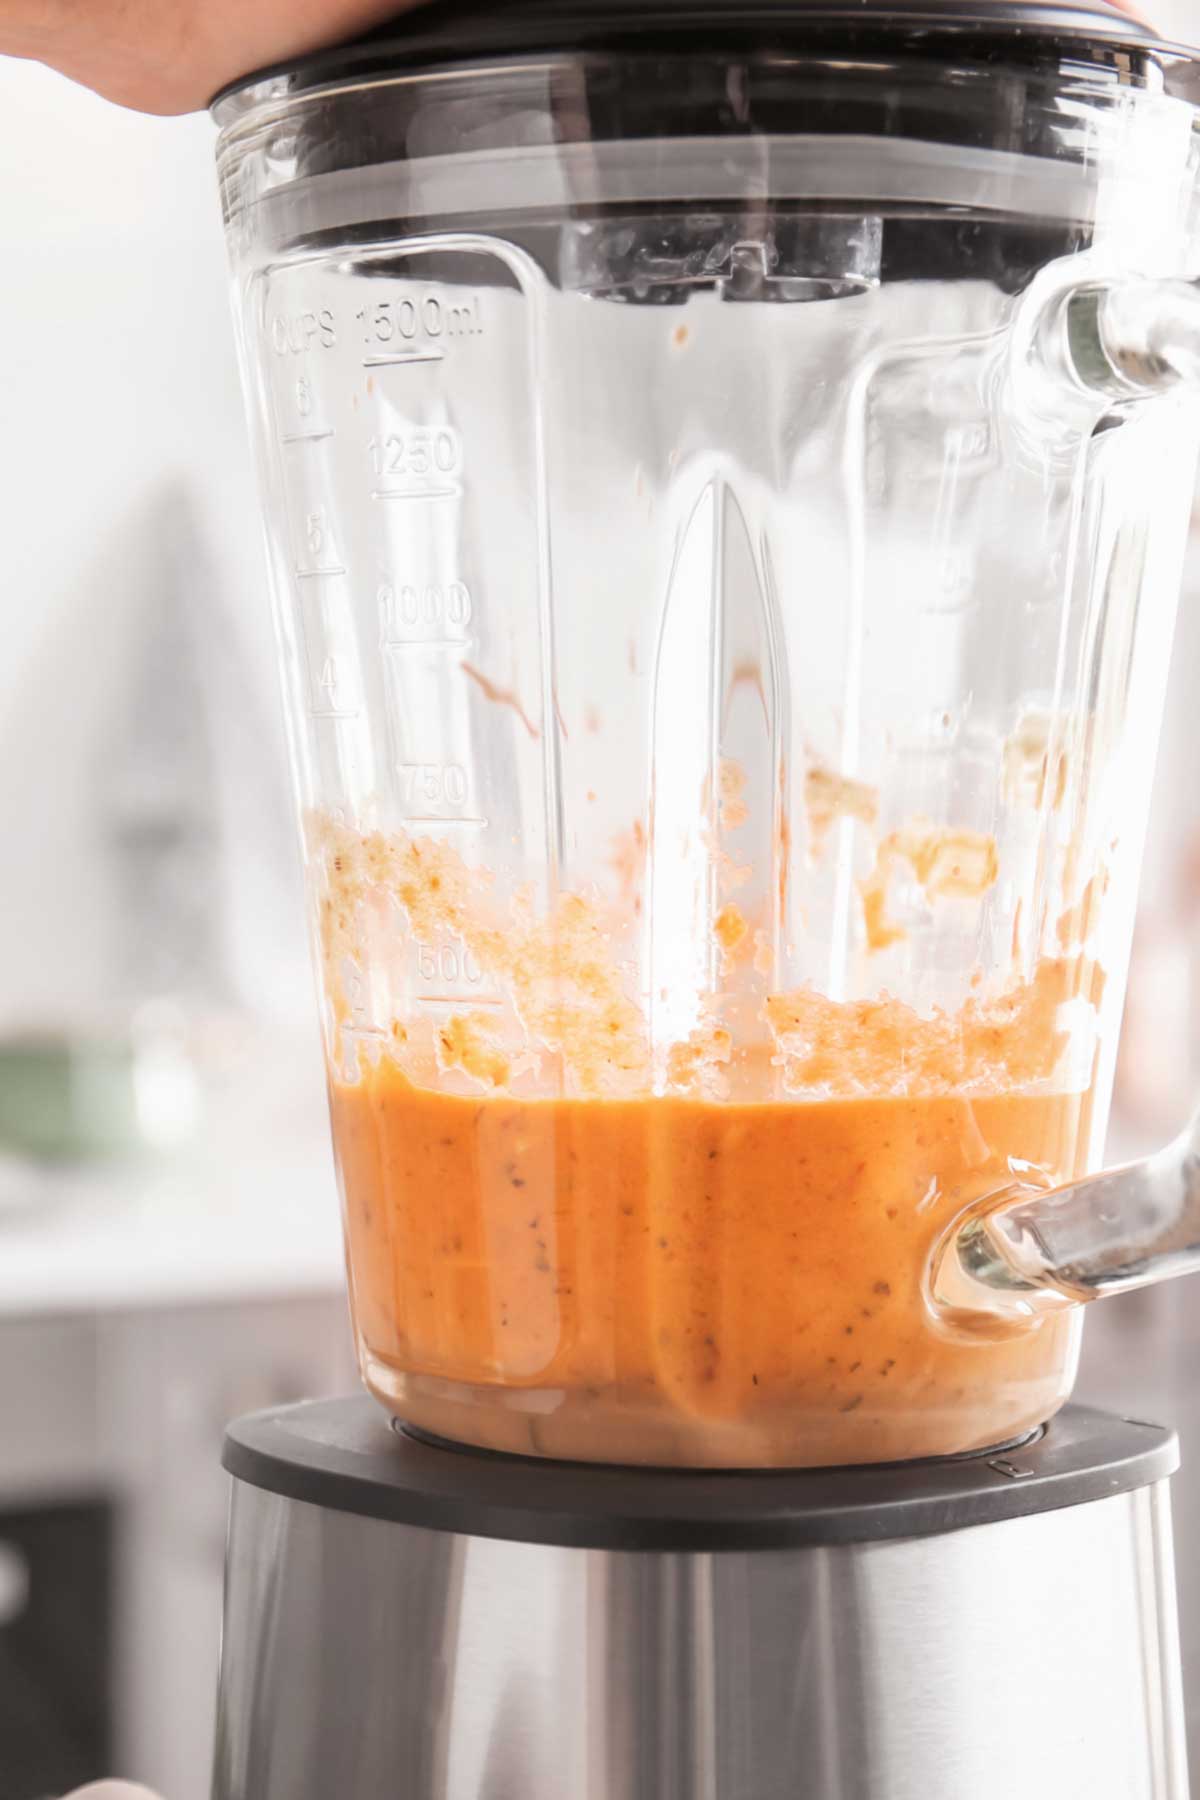 Pumpkin soup in a blender.